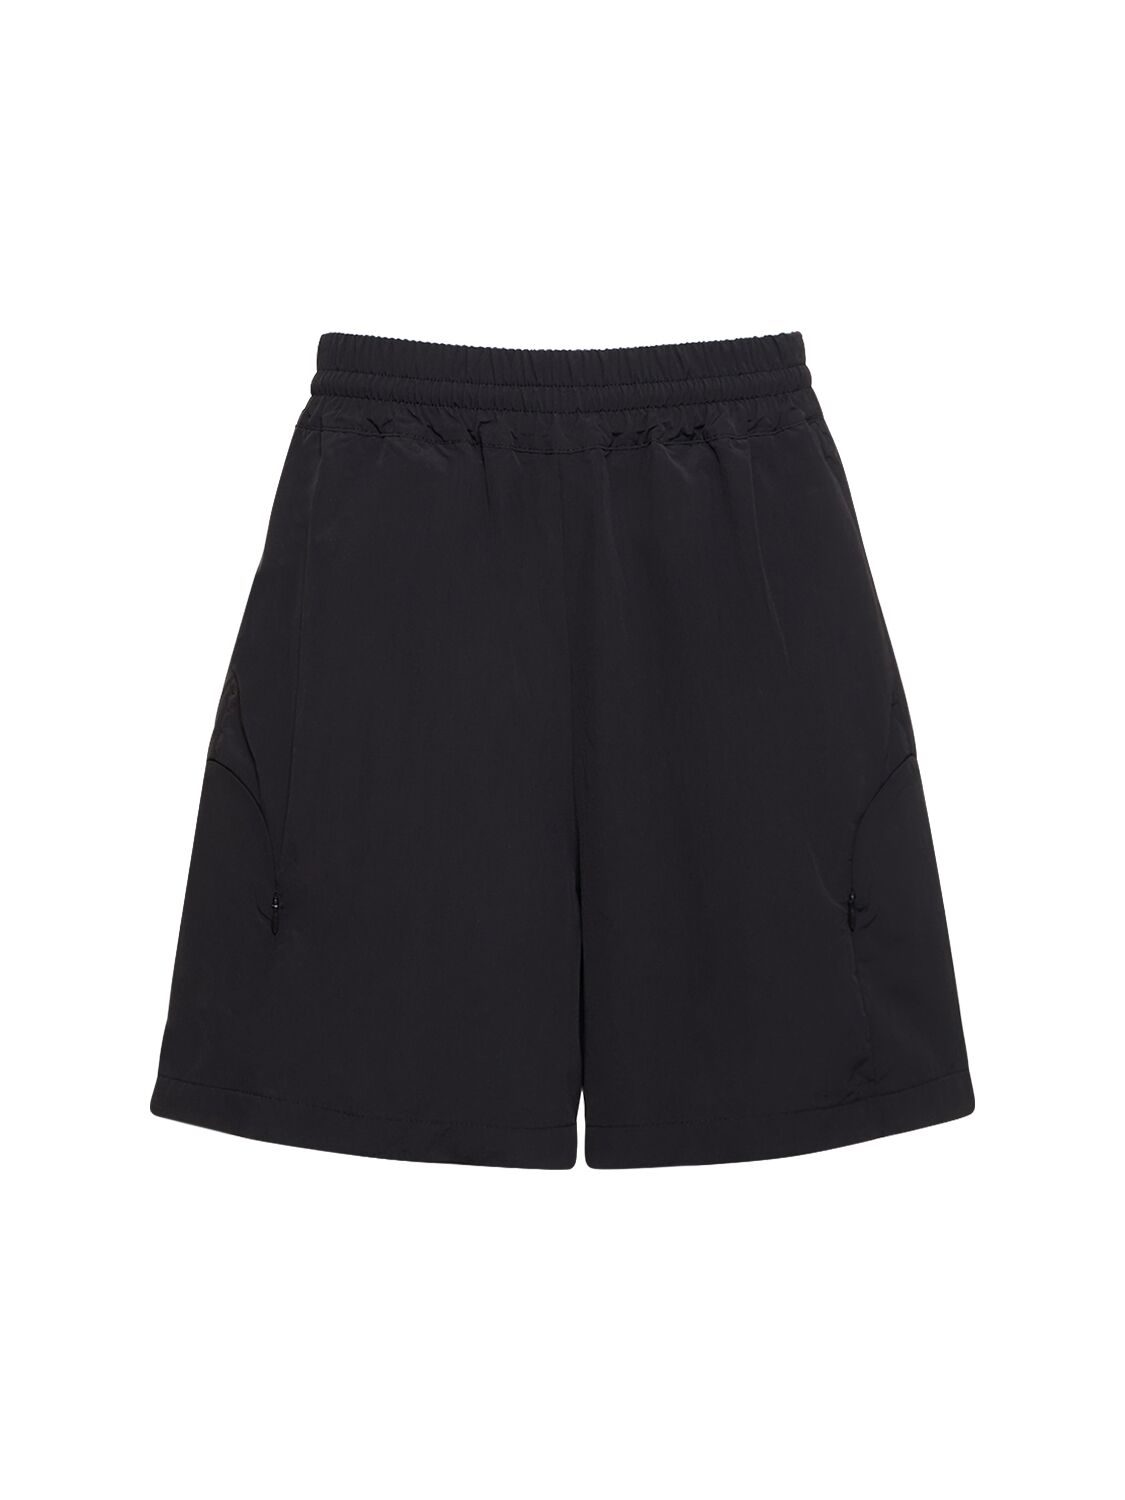 Arch Tech Blend Shorts – MEN > CLOTHING > SHORTS